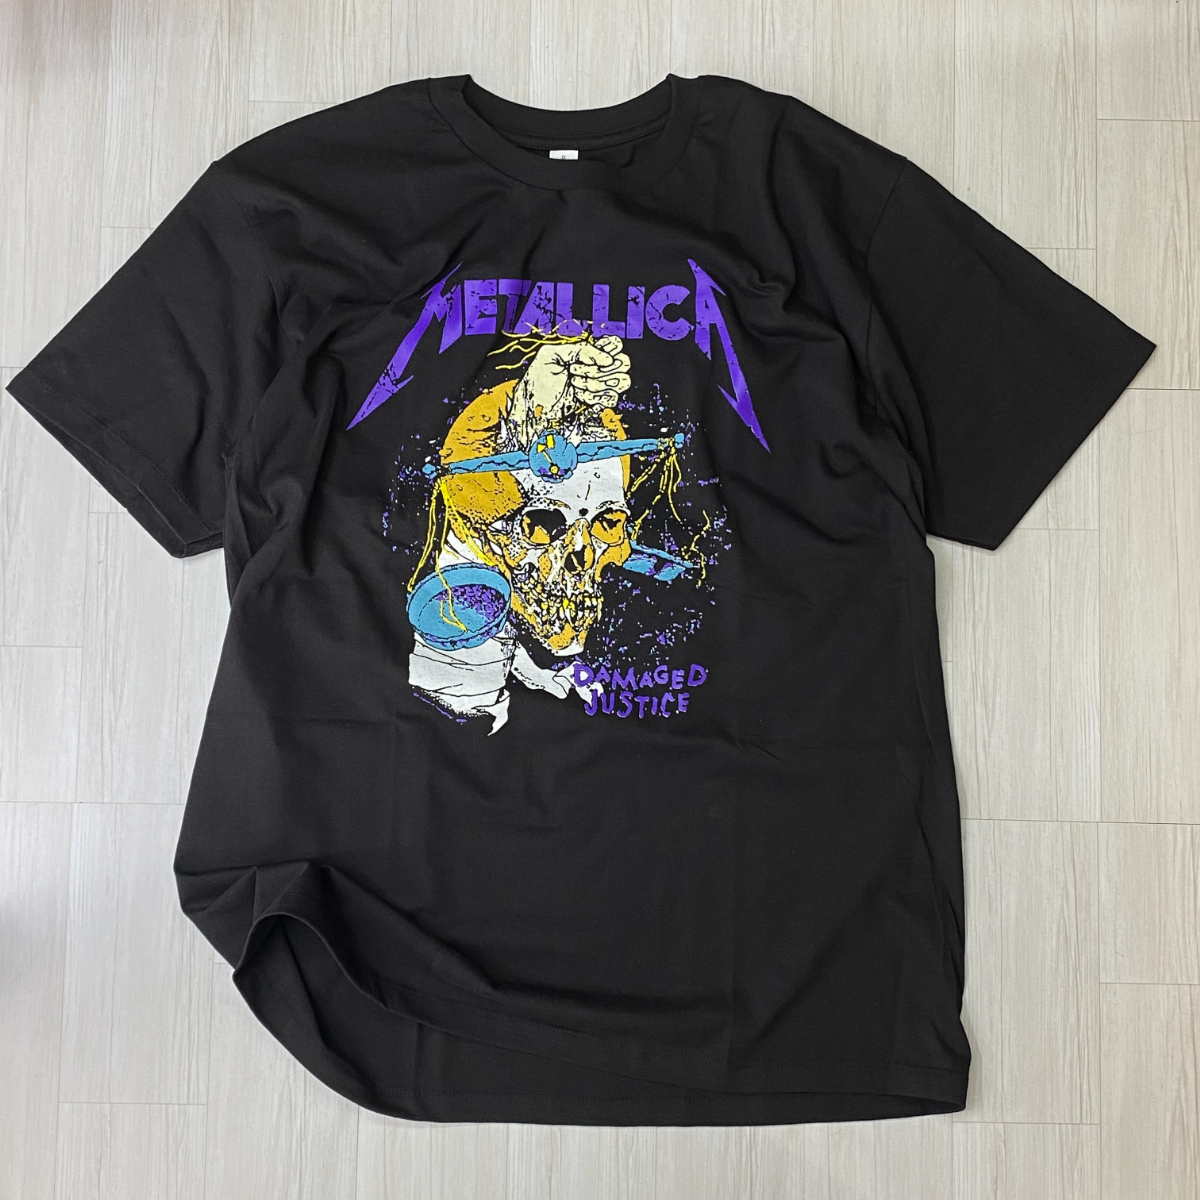 ロサンゼルス発 【2XL】 Metallica メタリカ Damaged Justice スカル 半袖 ヘビーウェイト Tシャツ 黒 バンドT ヘヴィメタルバンド USA規格_画像1